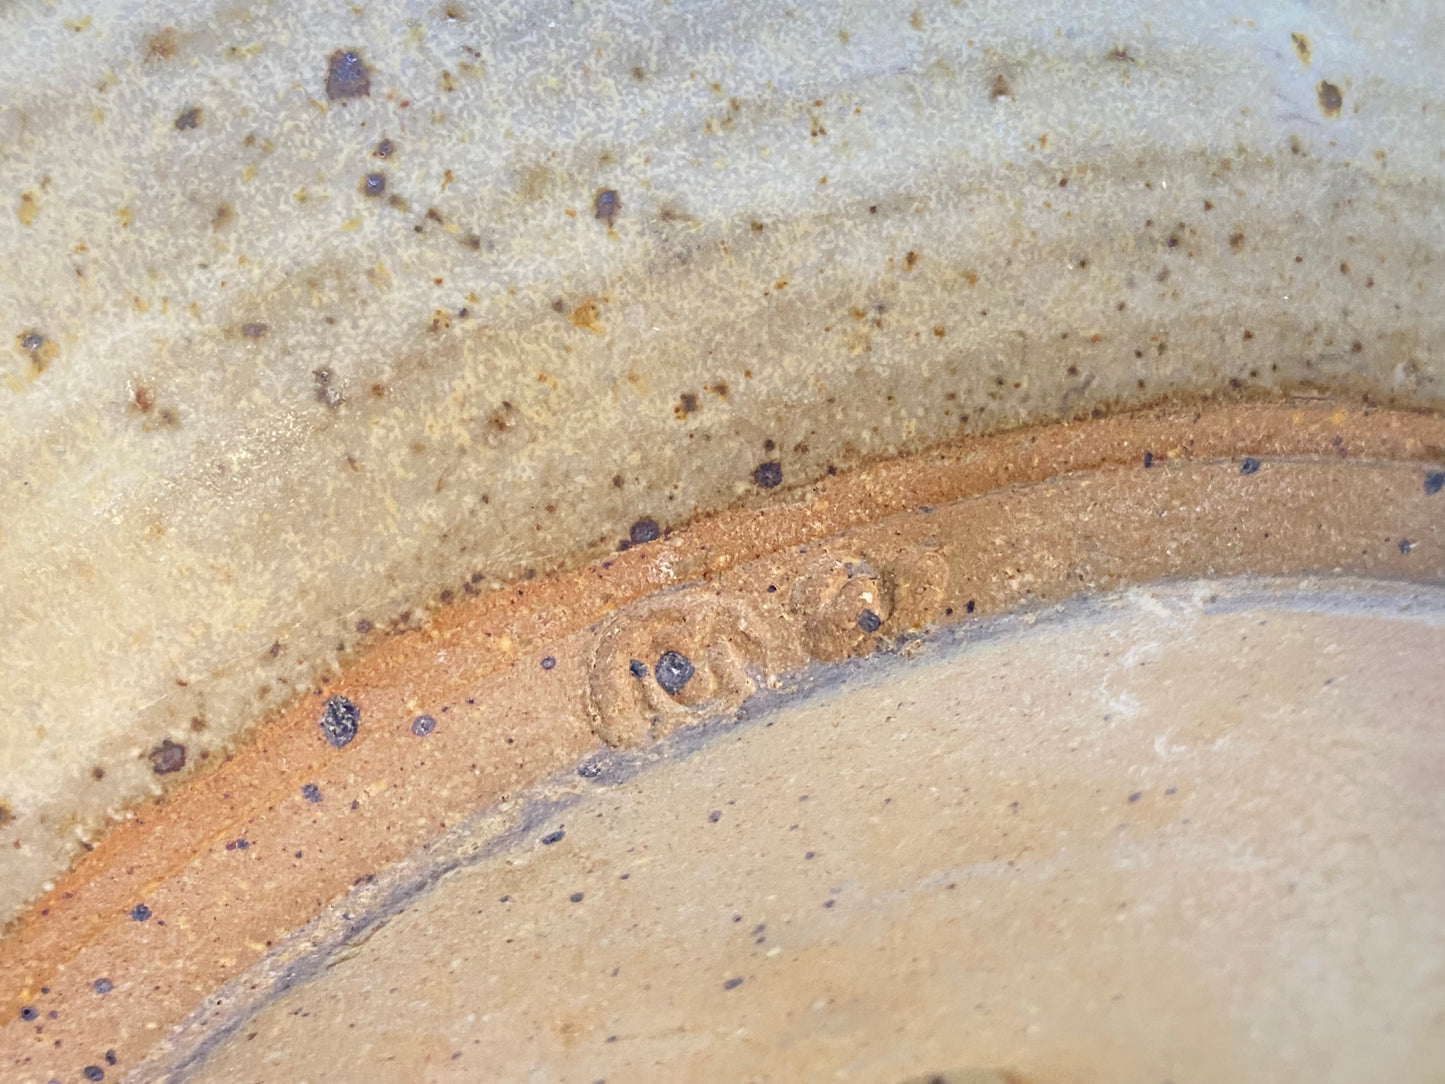 Cynthia Mitchell Tasmania - vintage pottery rice cooker - white dolomite glaze